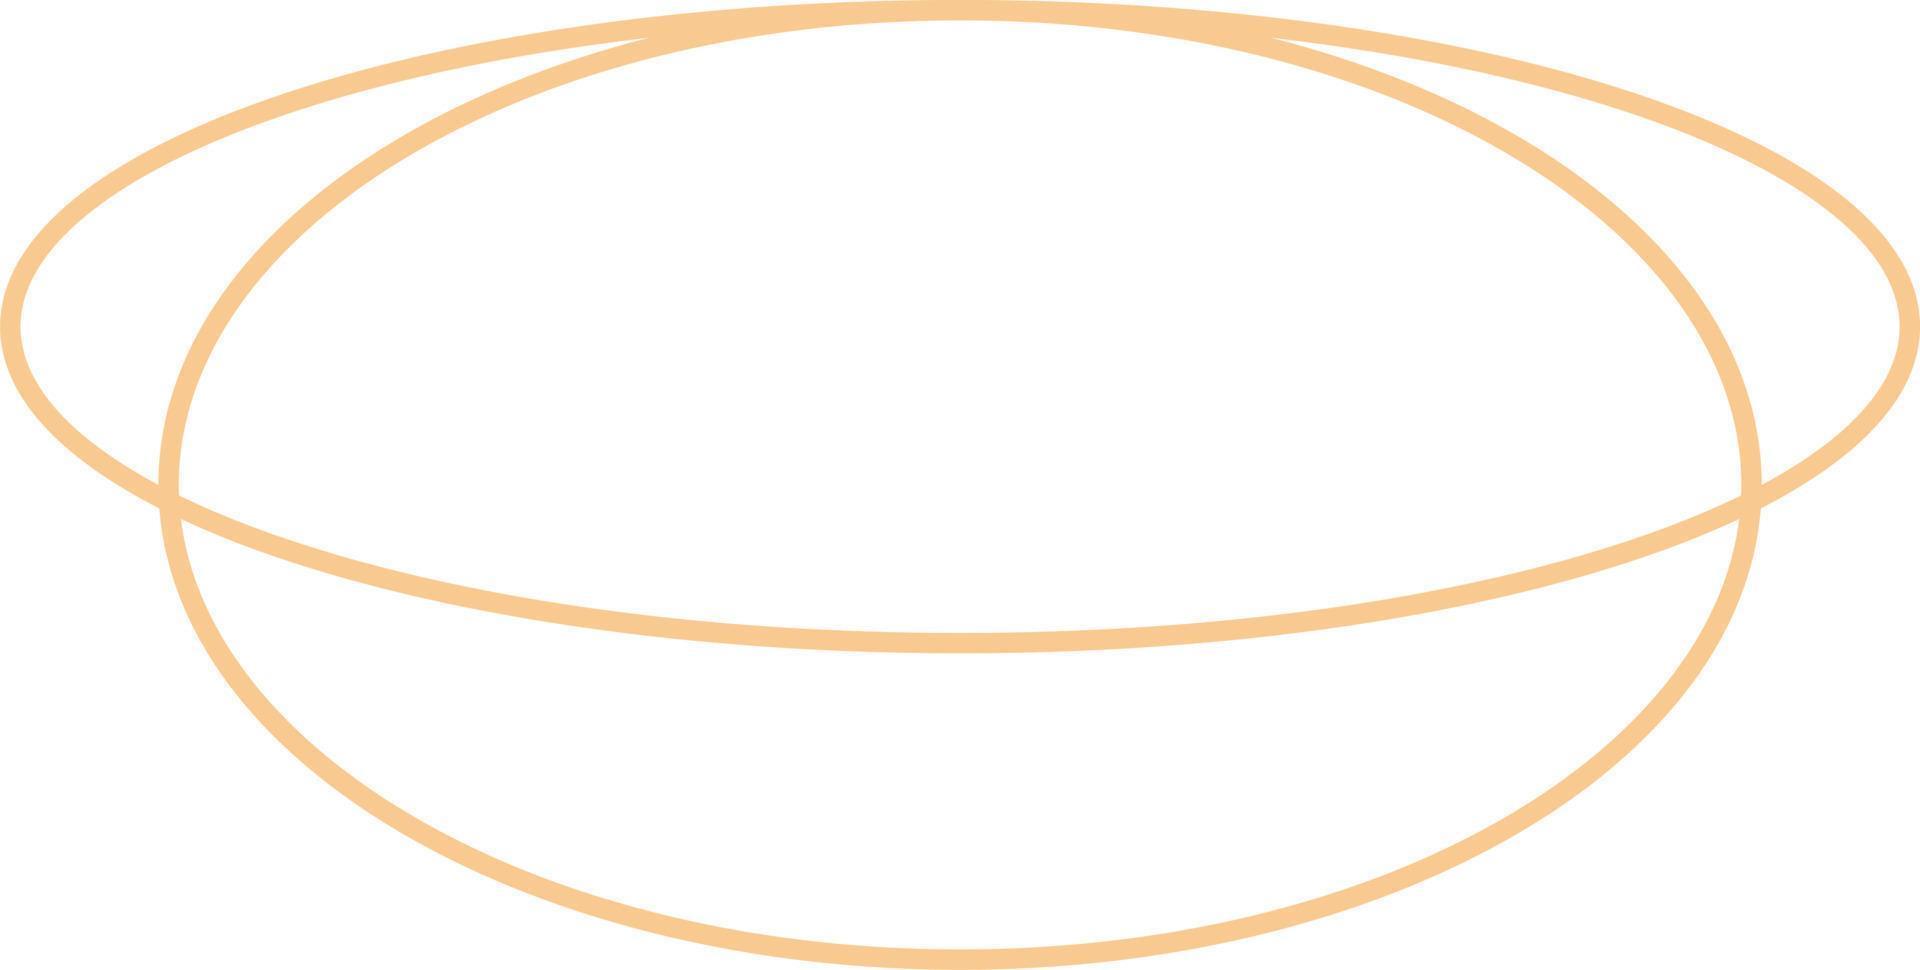 minimal oval översikt design vektor